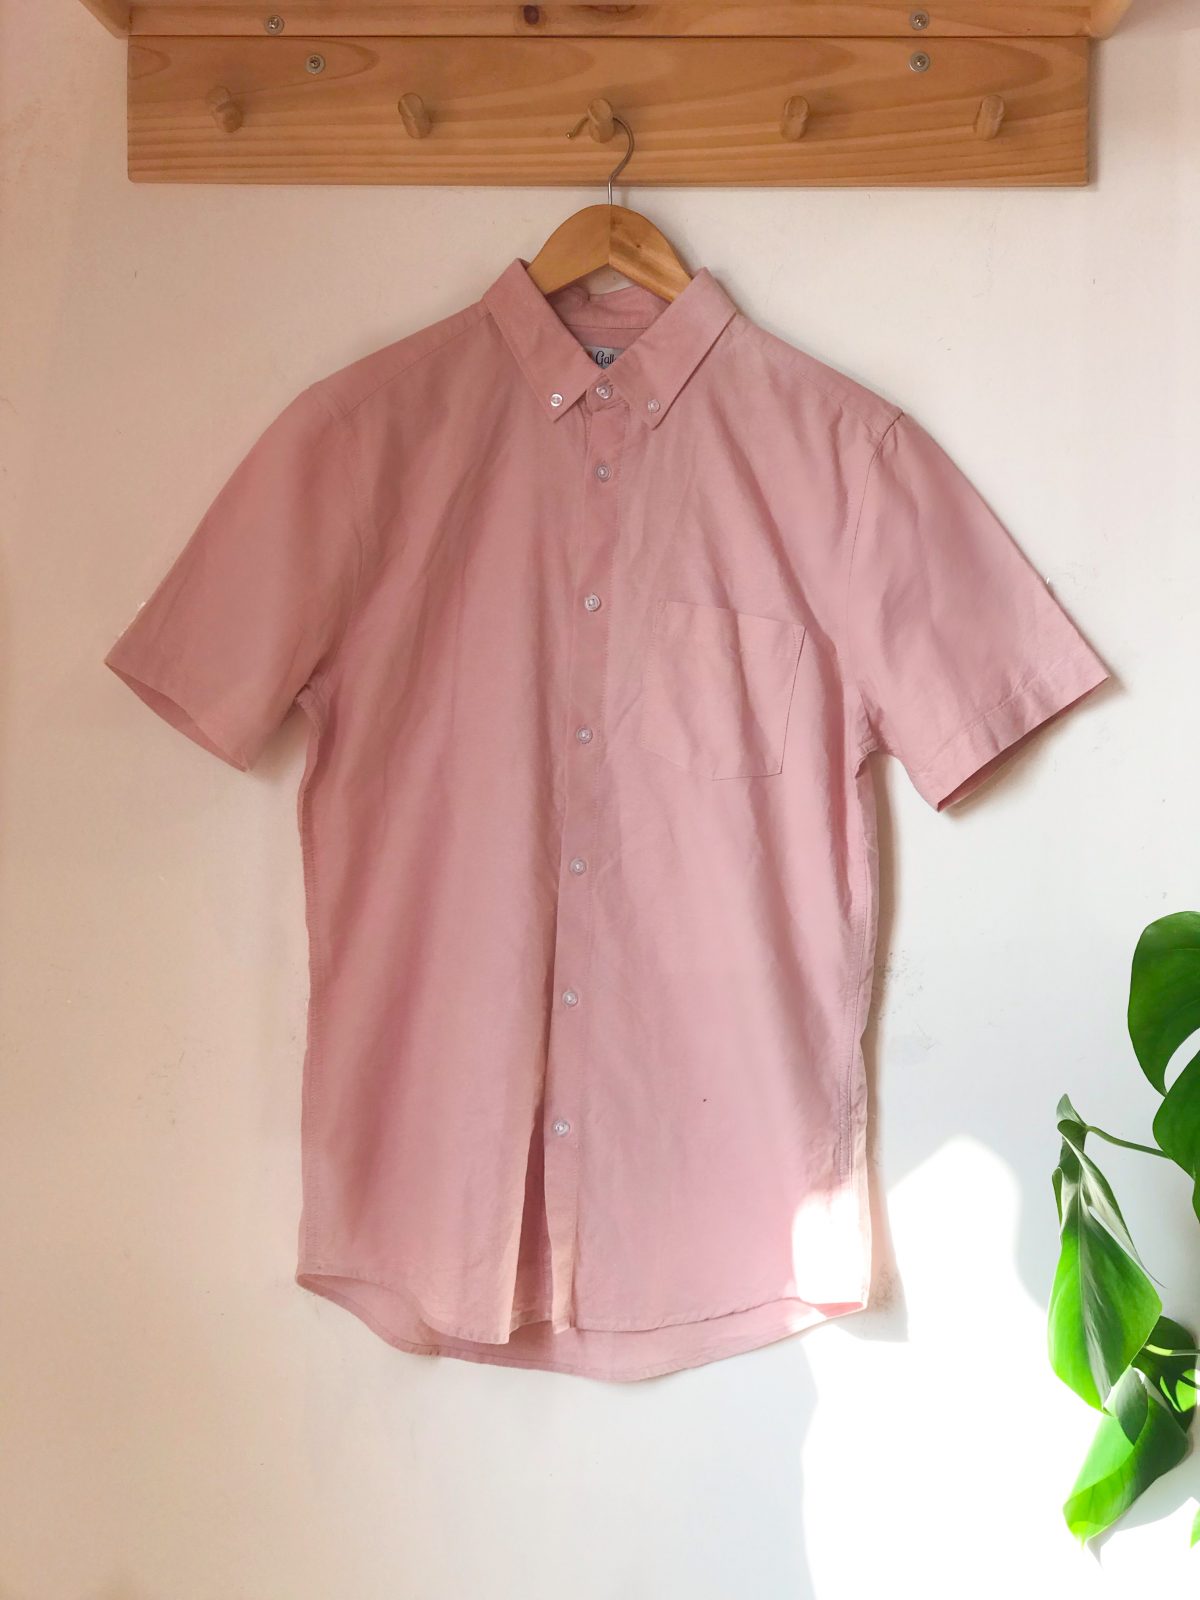 camisa de hombre rosada - ecuador - ropa gallardo - envíos nacionales